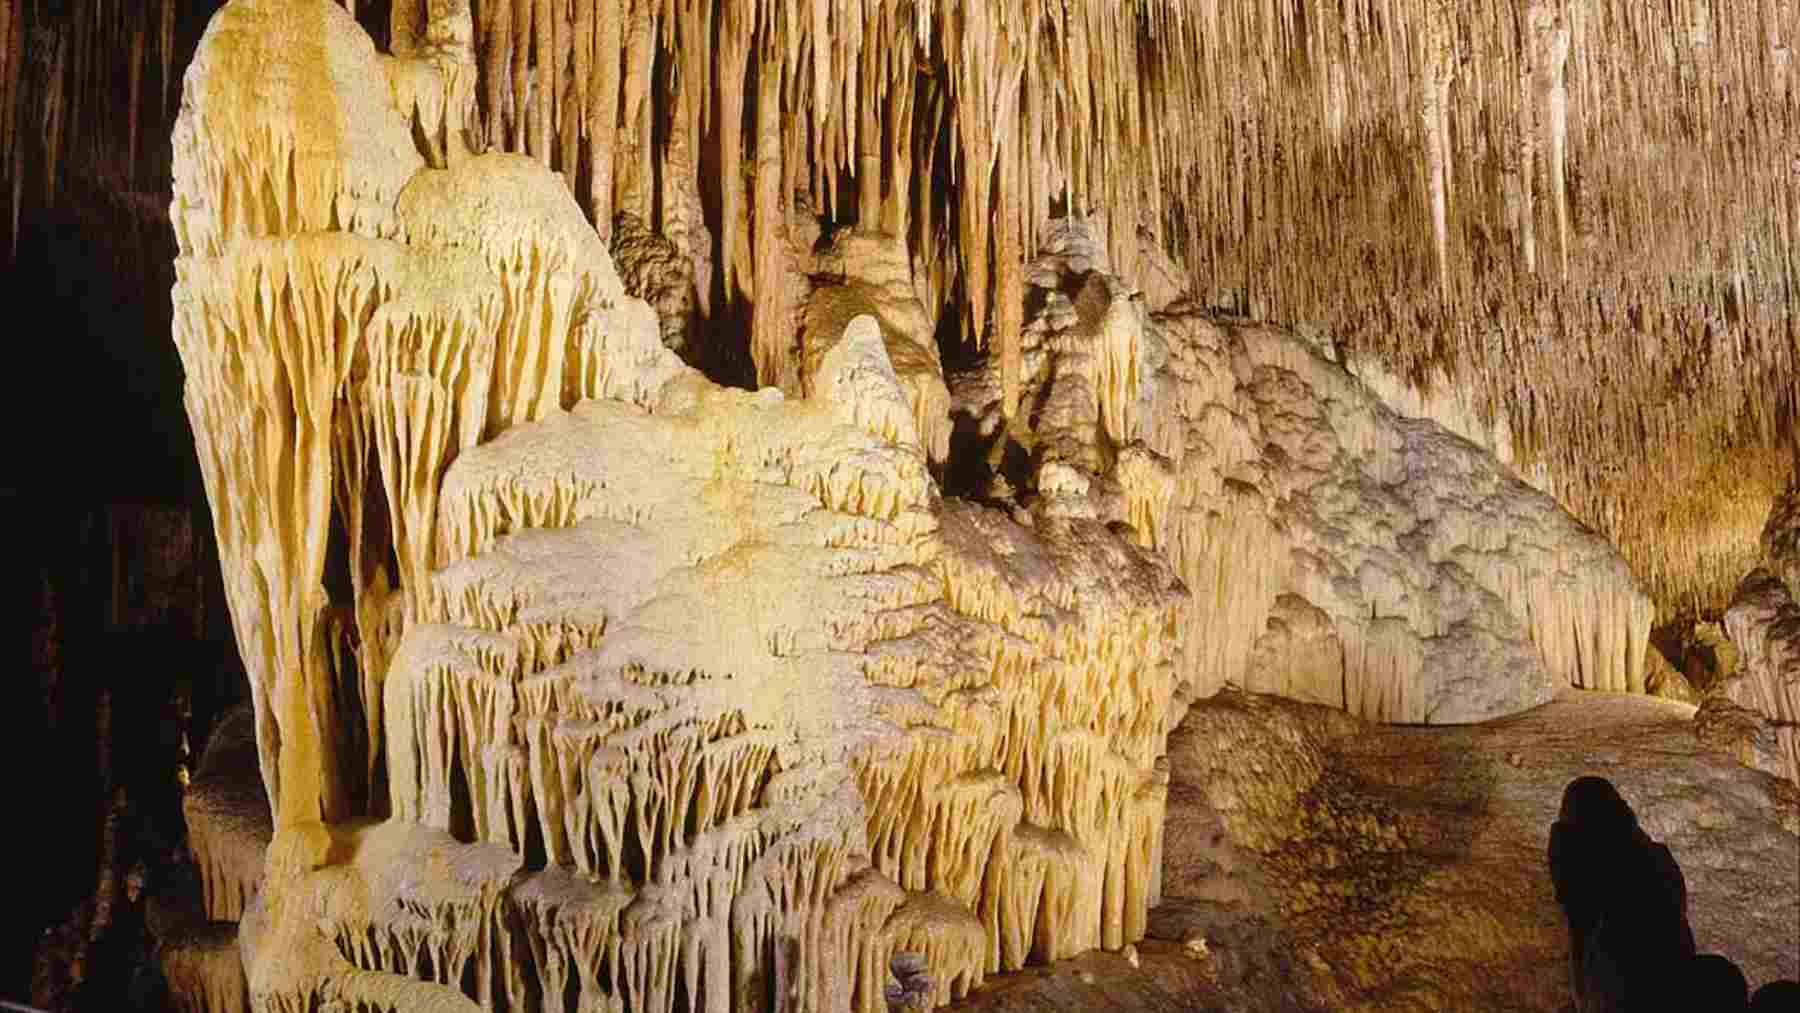 Formación calcárea llamada Monte nevado, en las Cuevas del Drach.